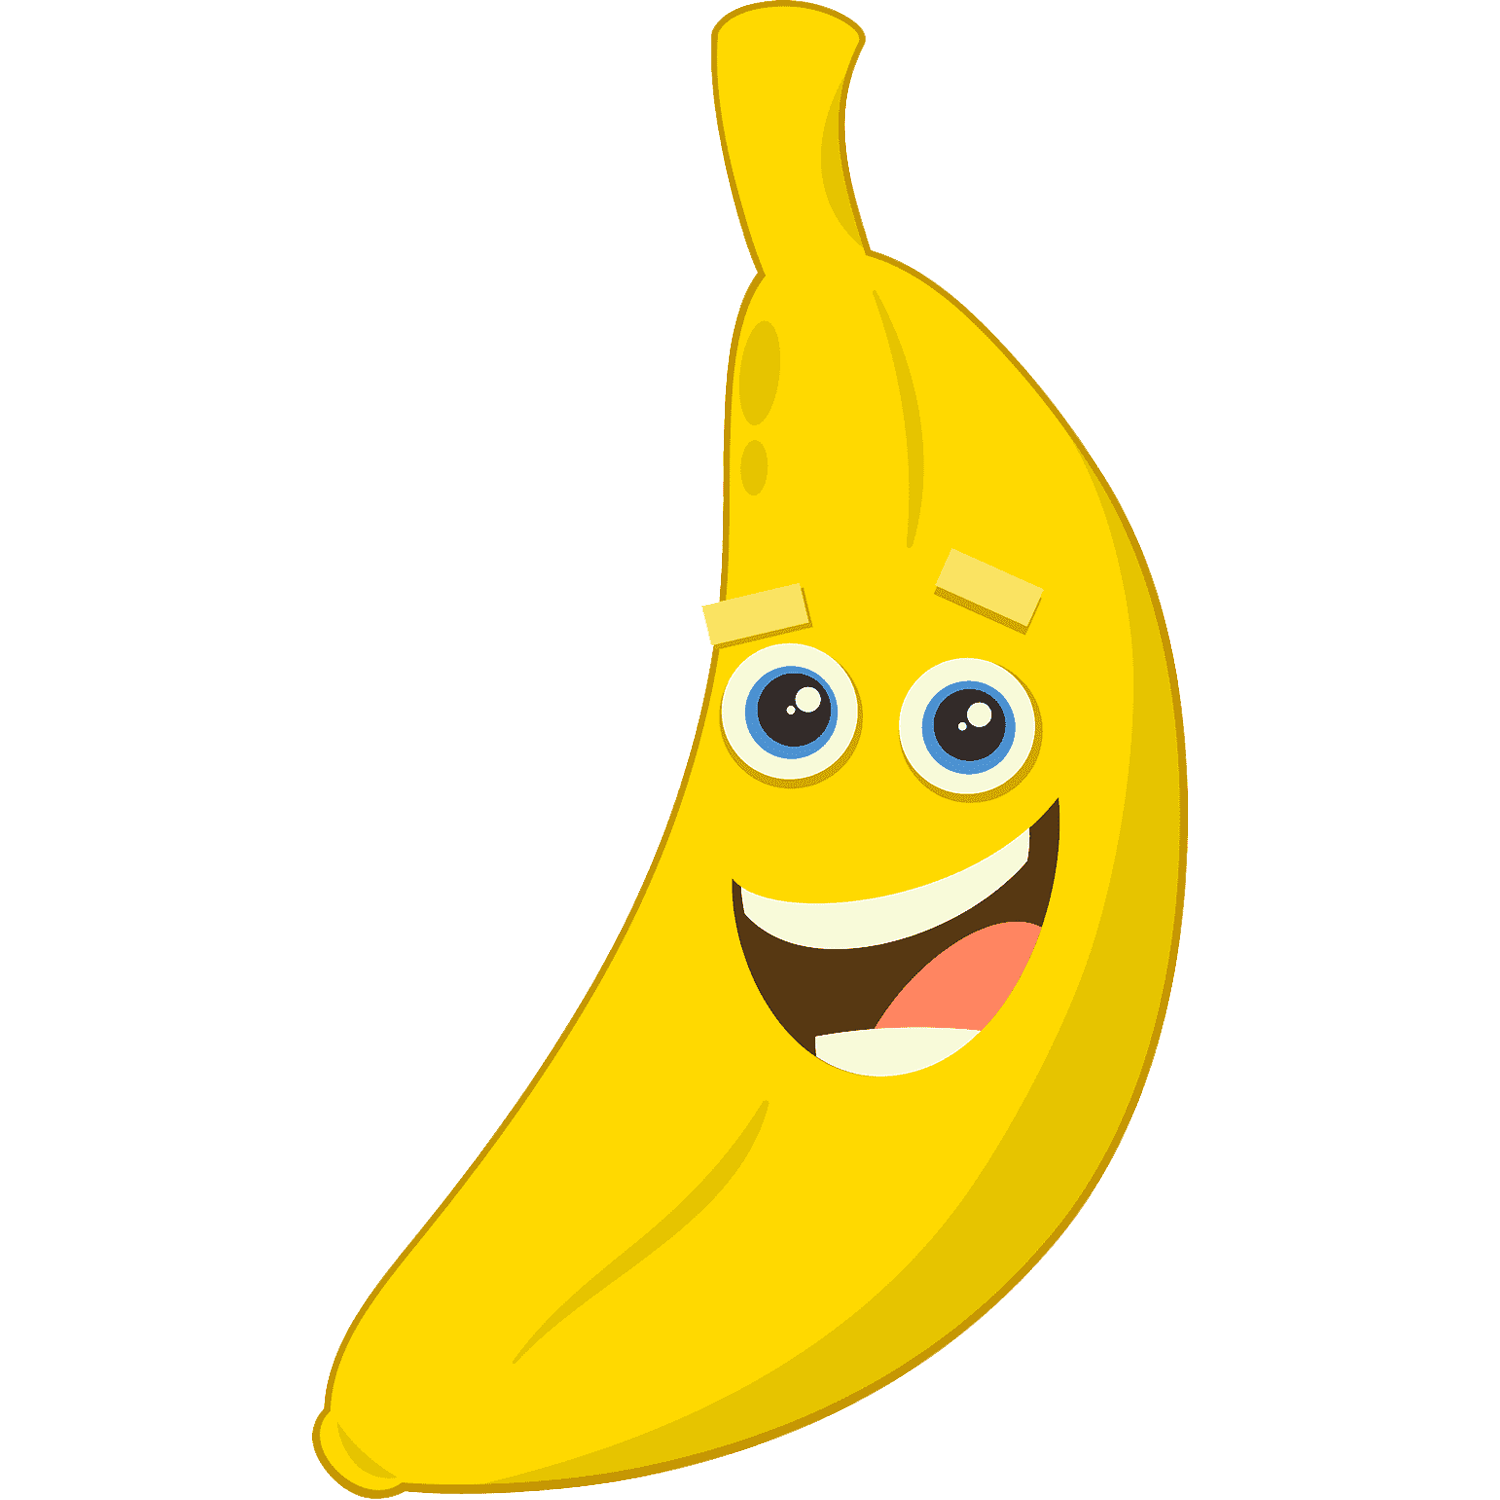 Banana Cartoon  Transparent Image